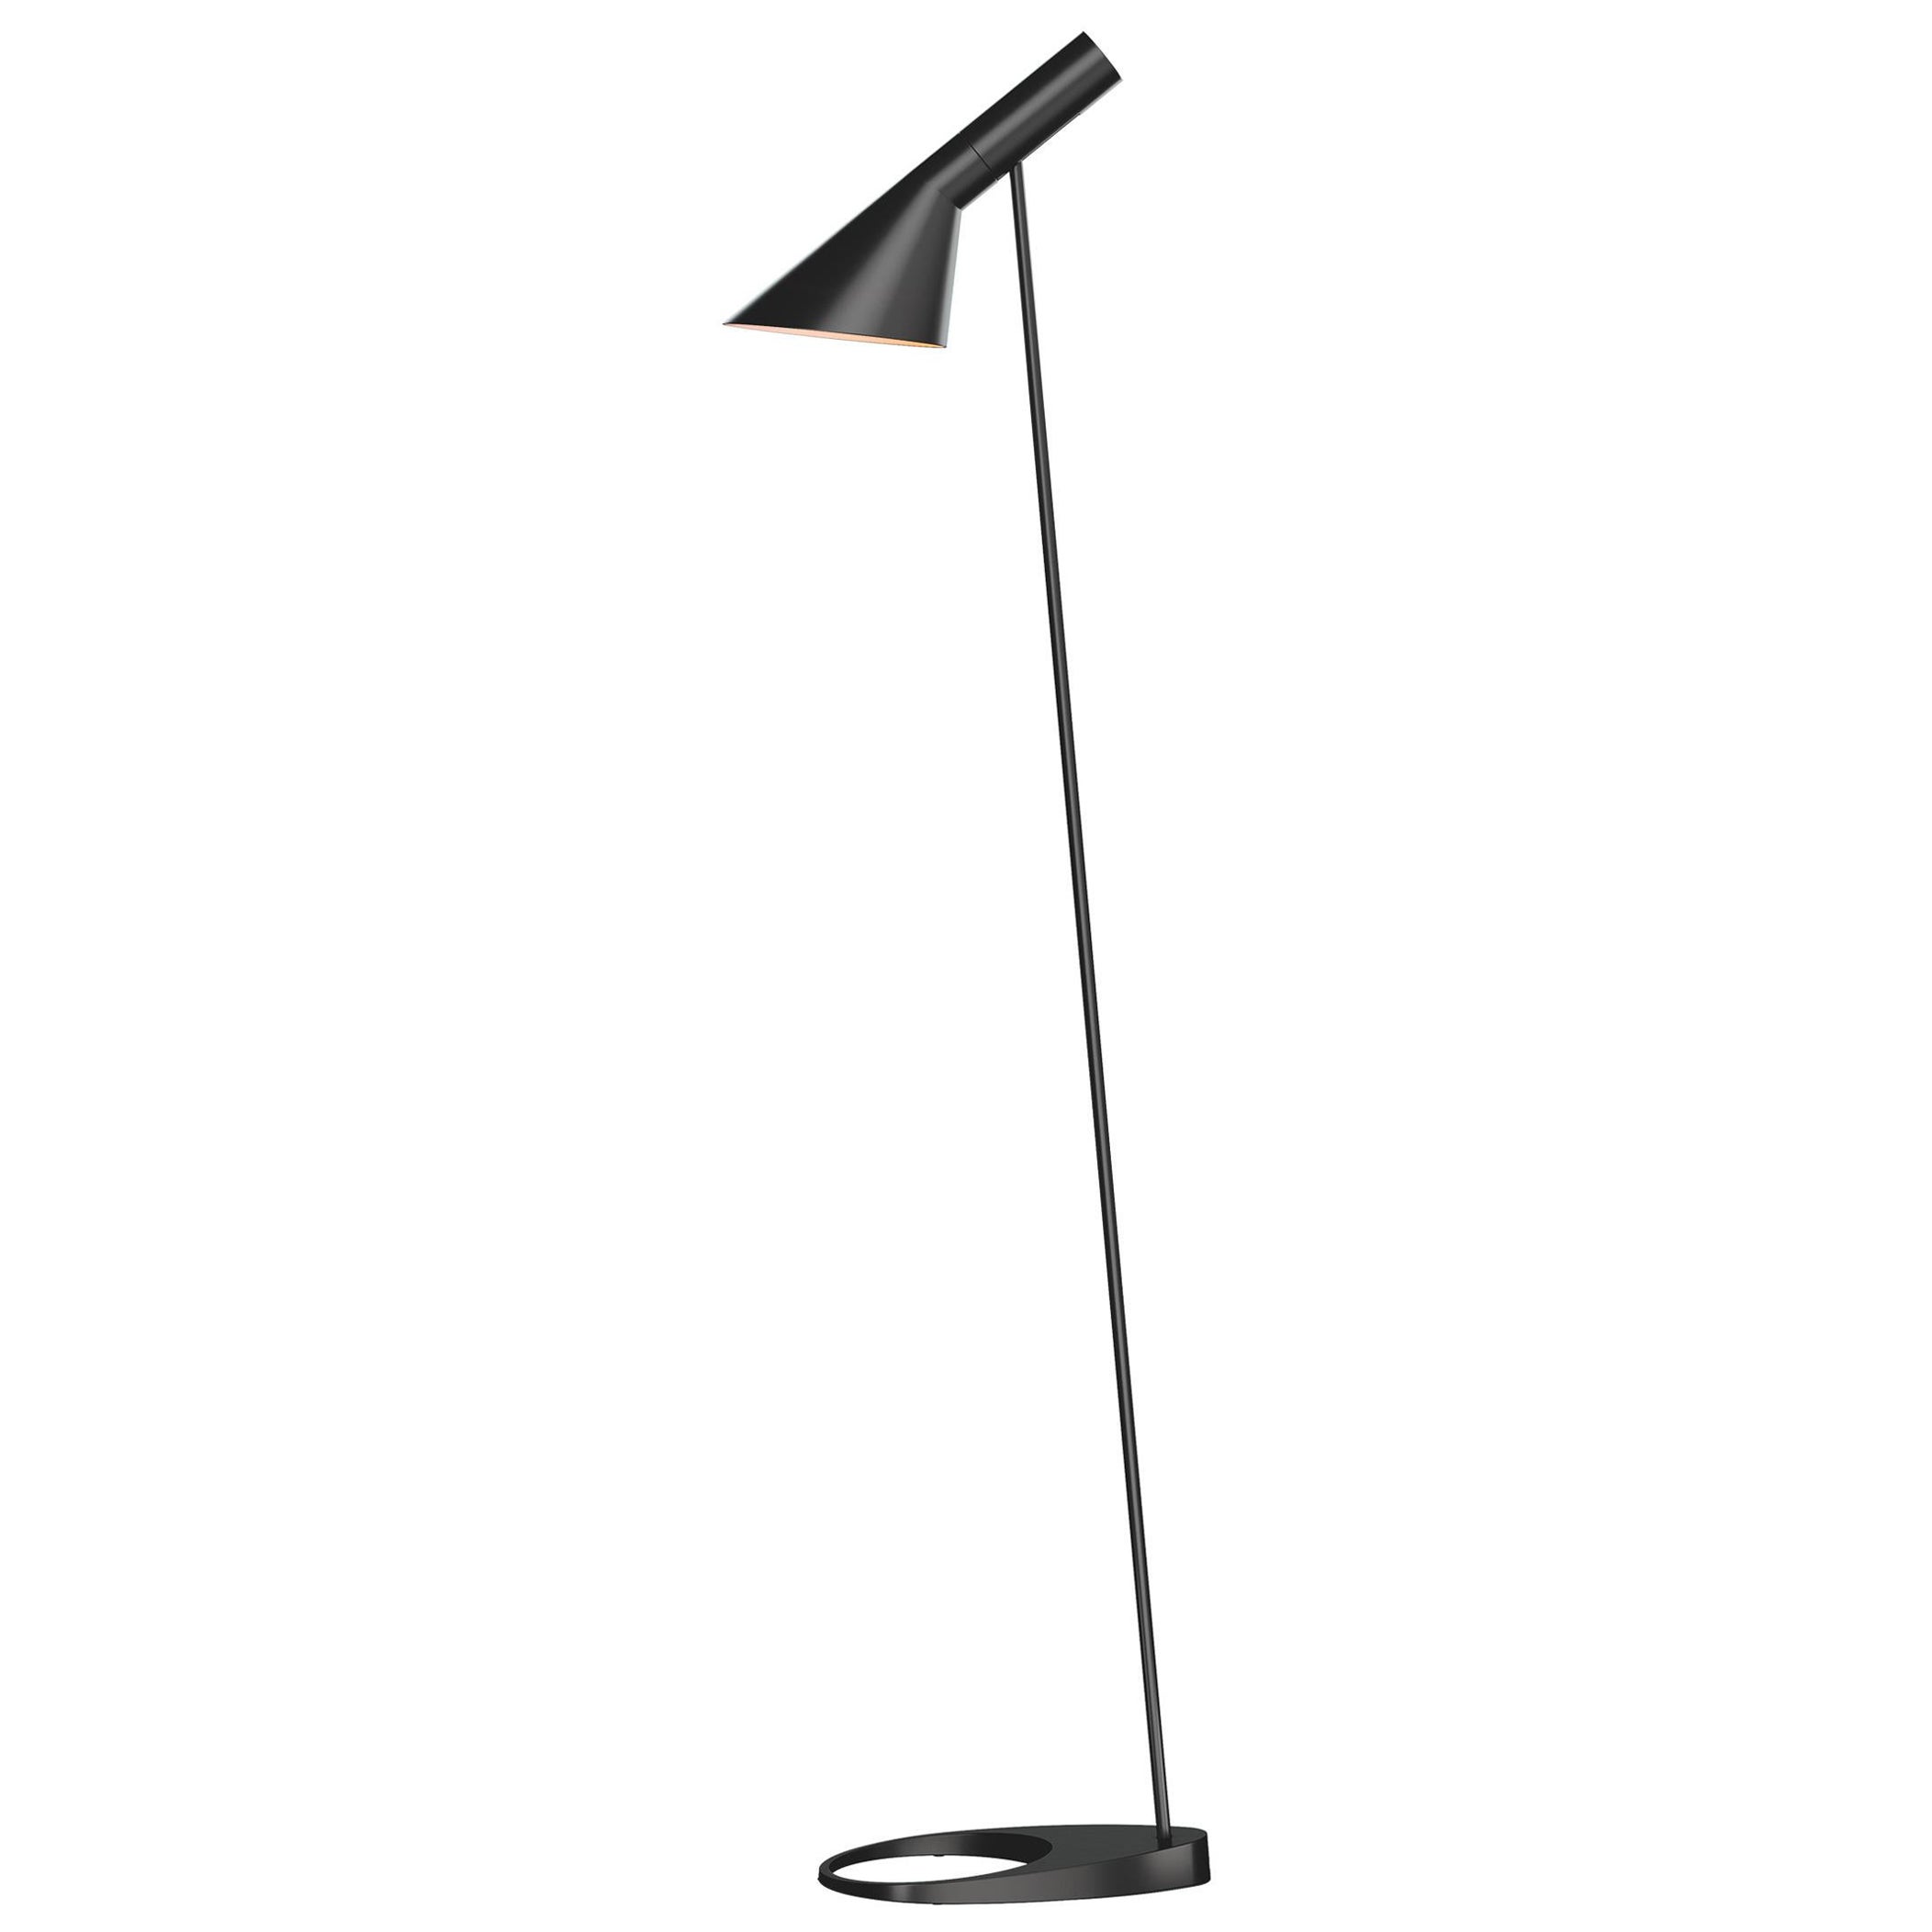 Stehlampe AJ von Arne Jacobsen, Louis Poulsen